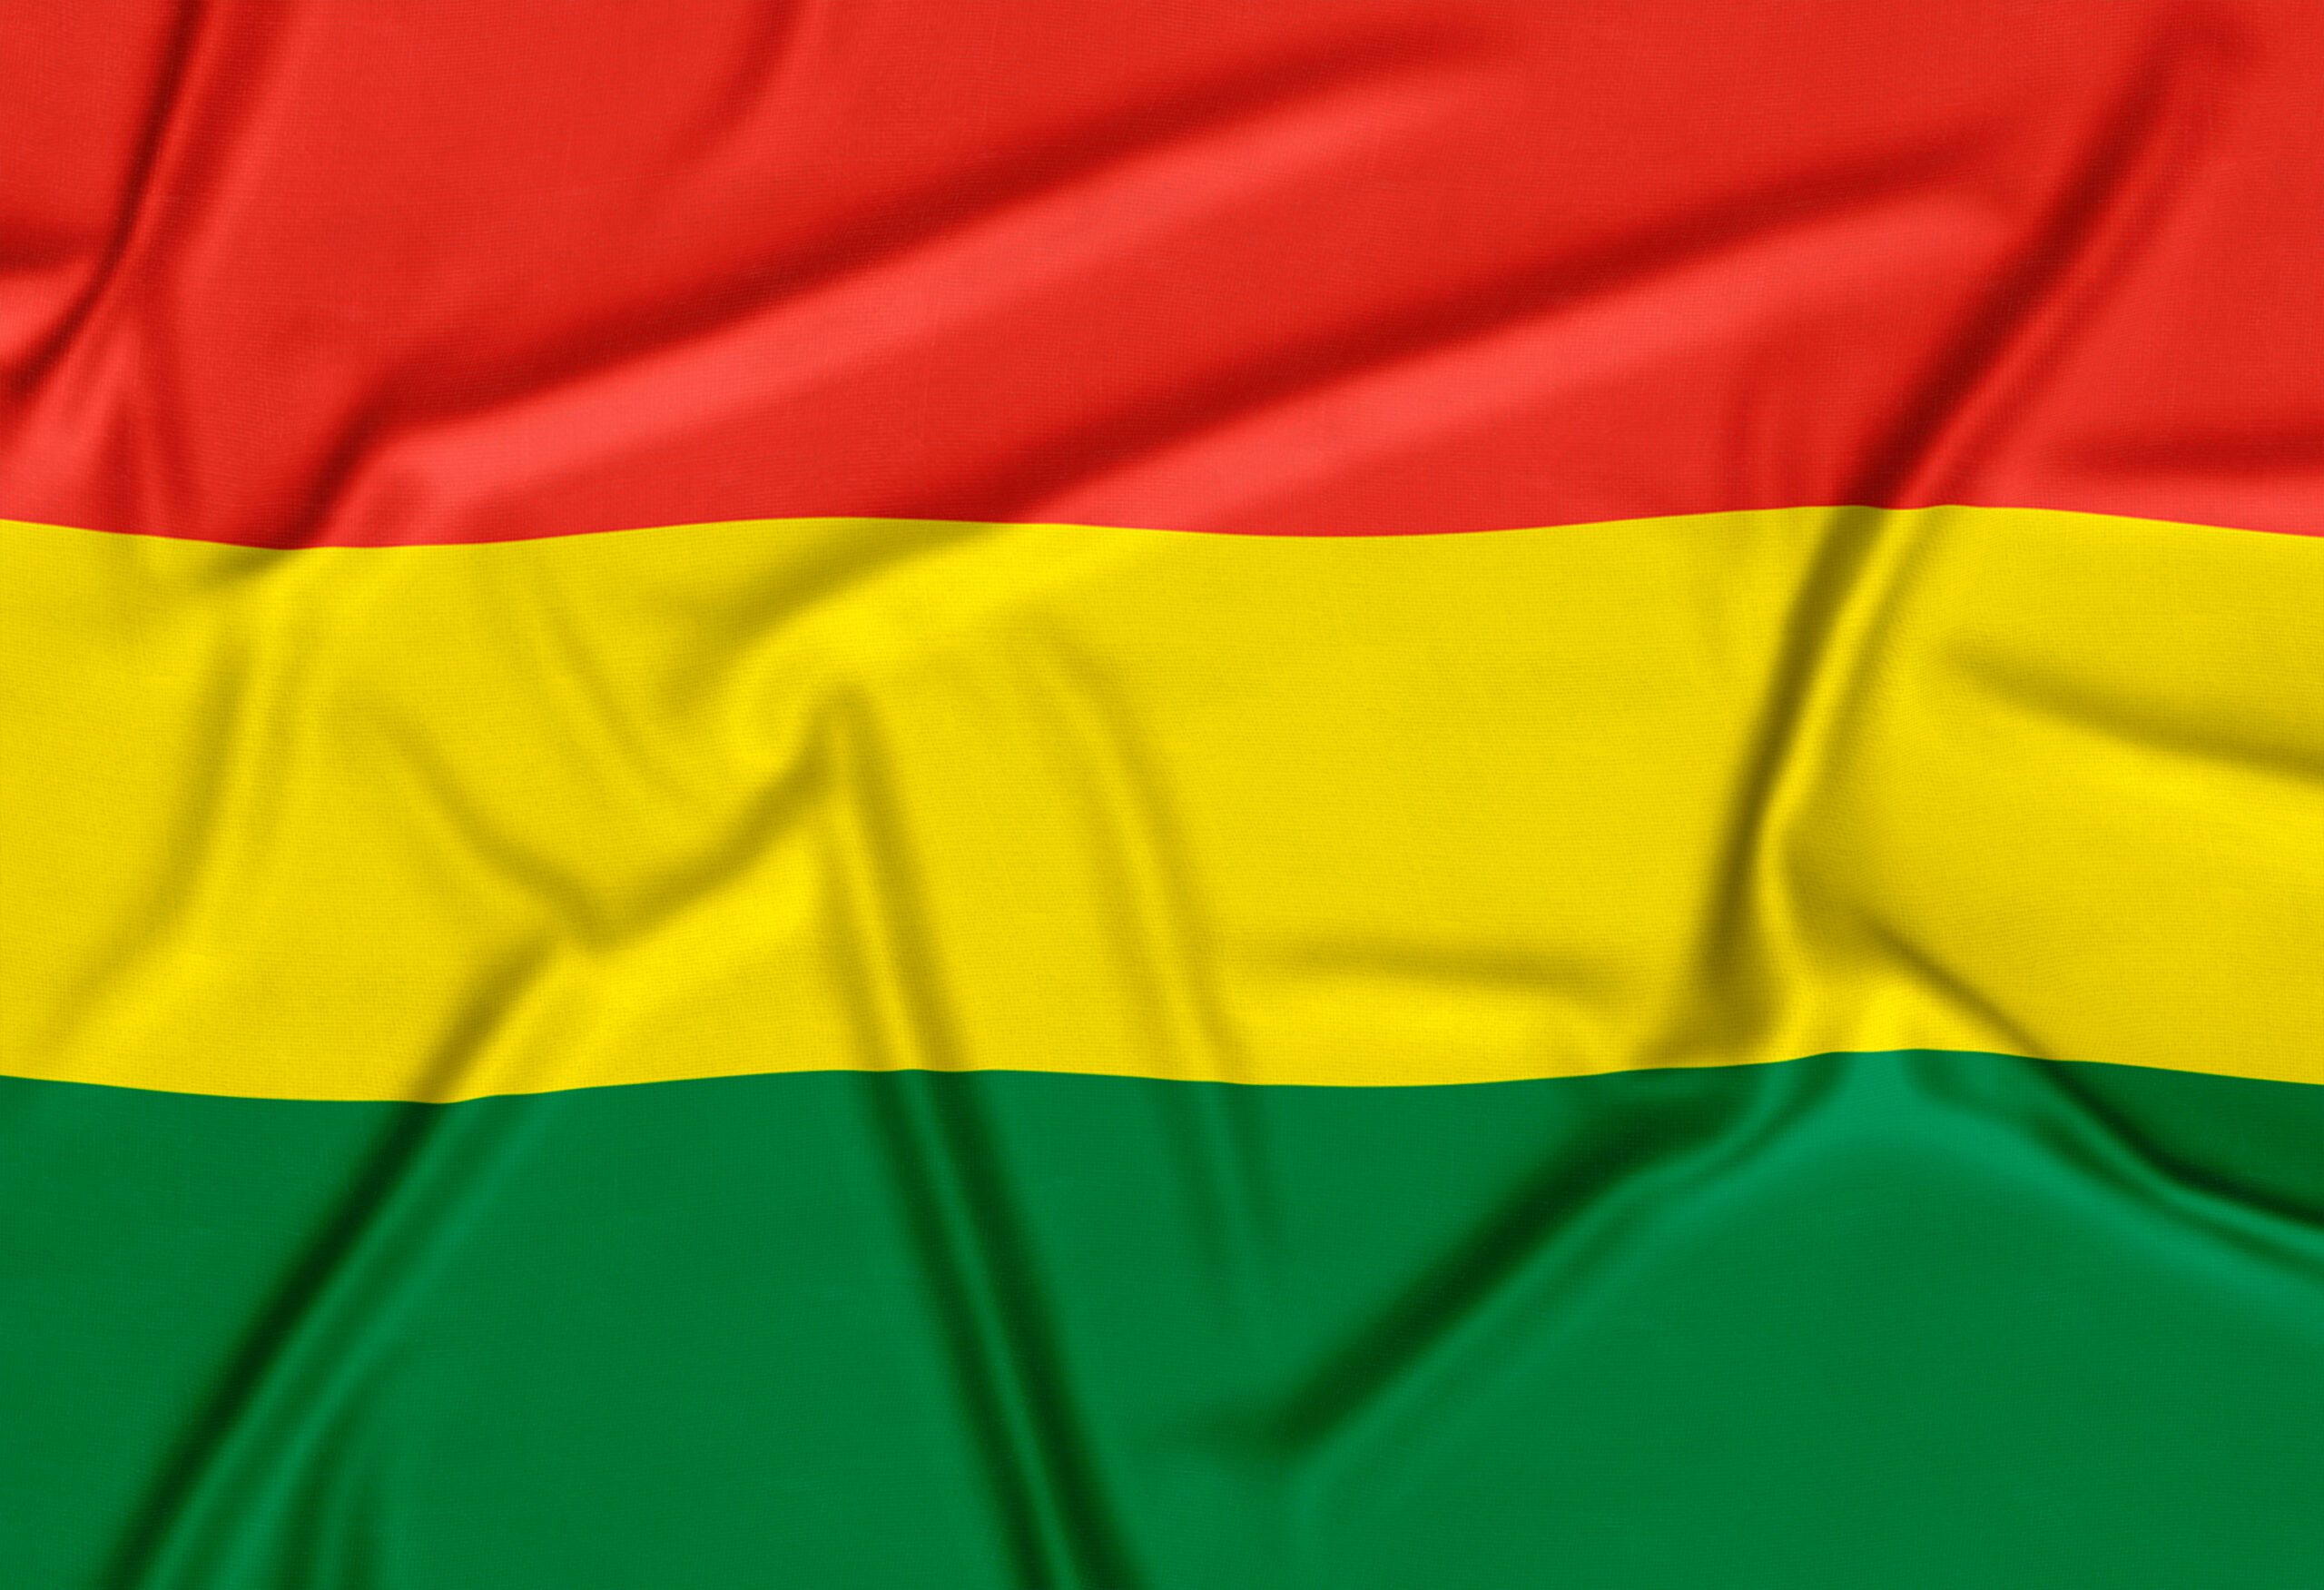 Obtener nacionalidad española siendo boliviano